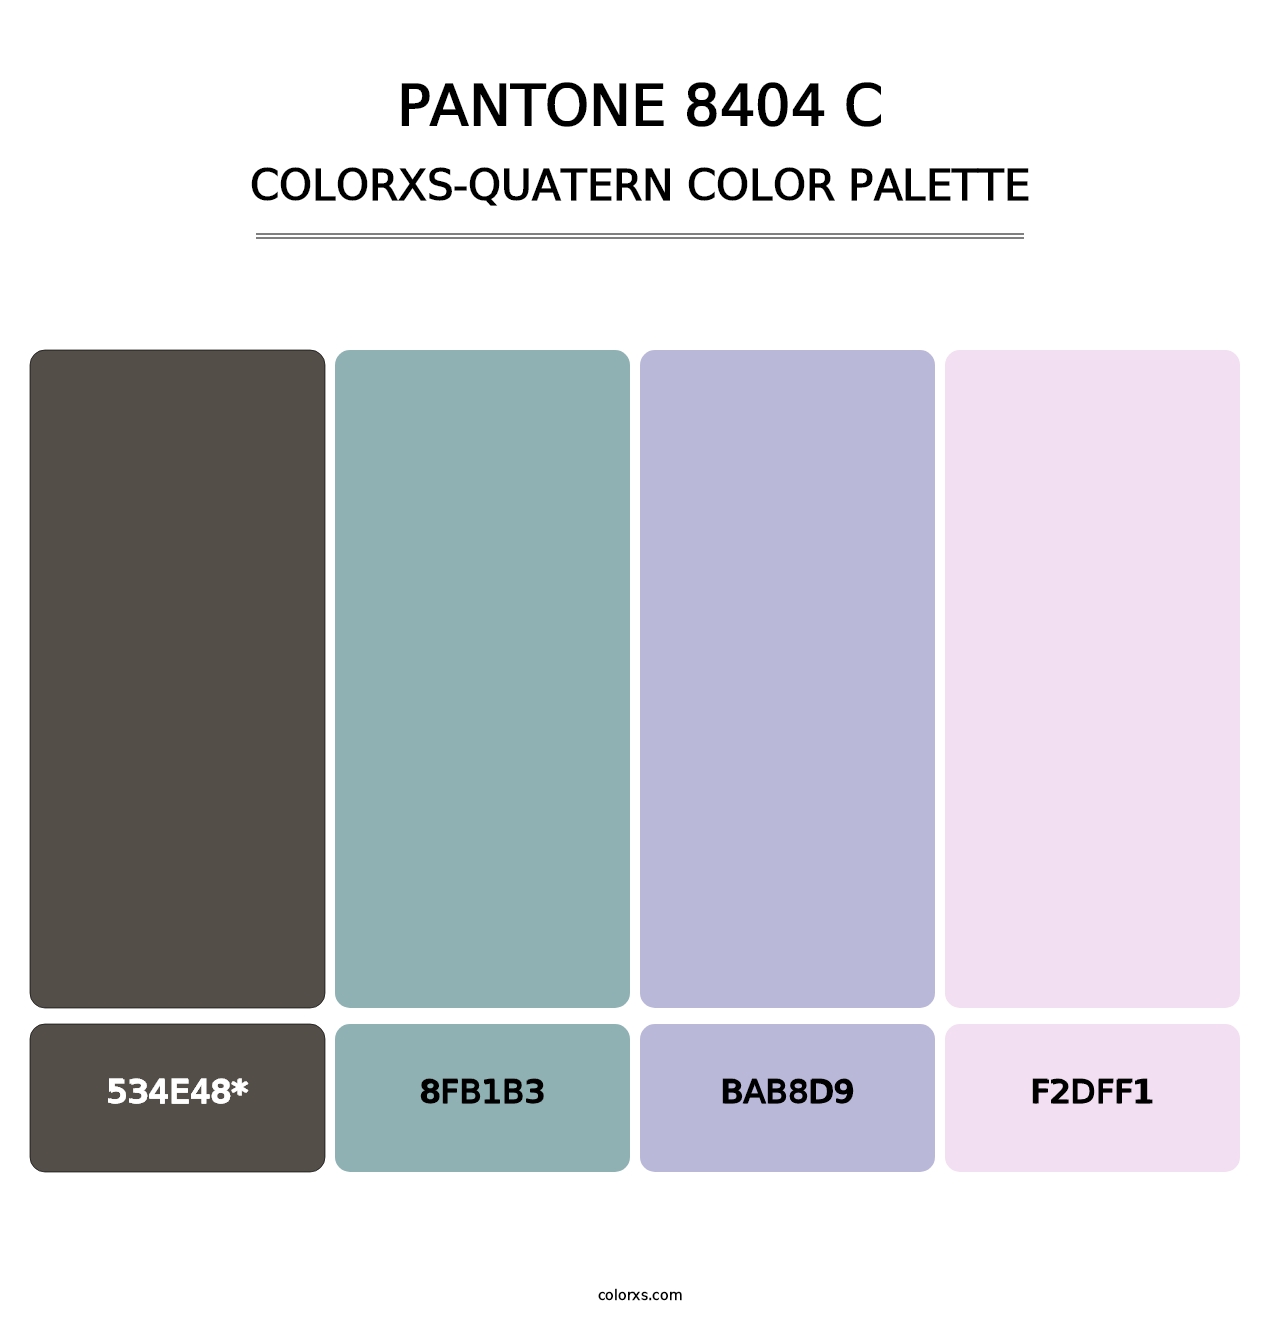 PANTONE 8404 C - Colorxs Quatern Palette